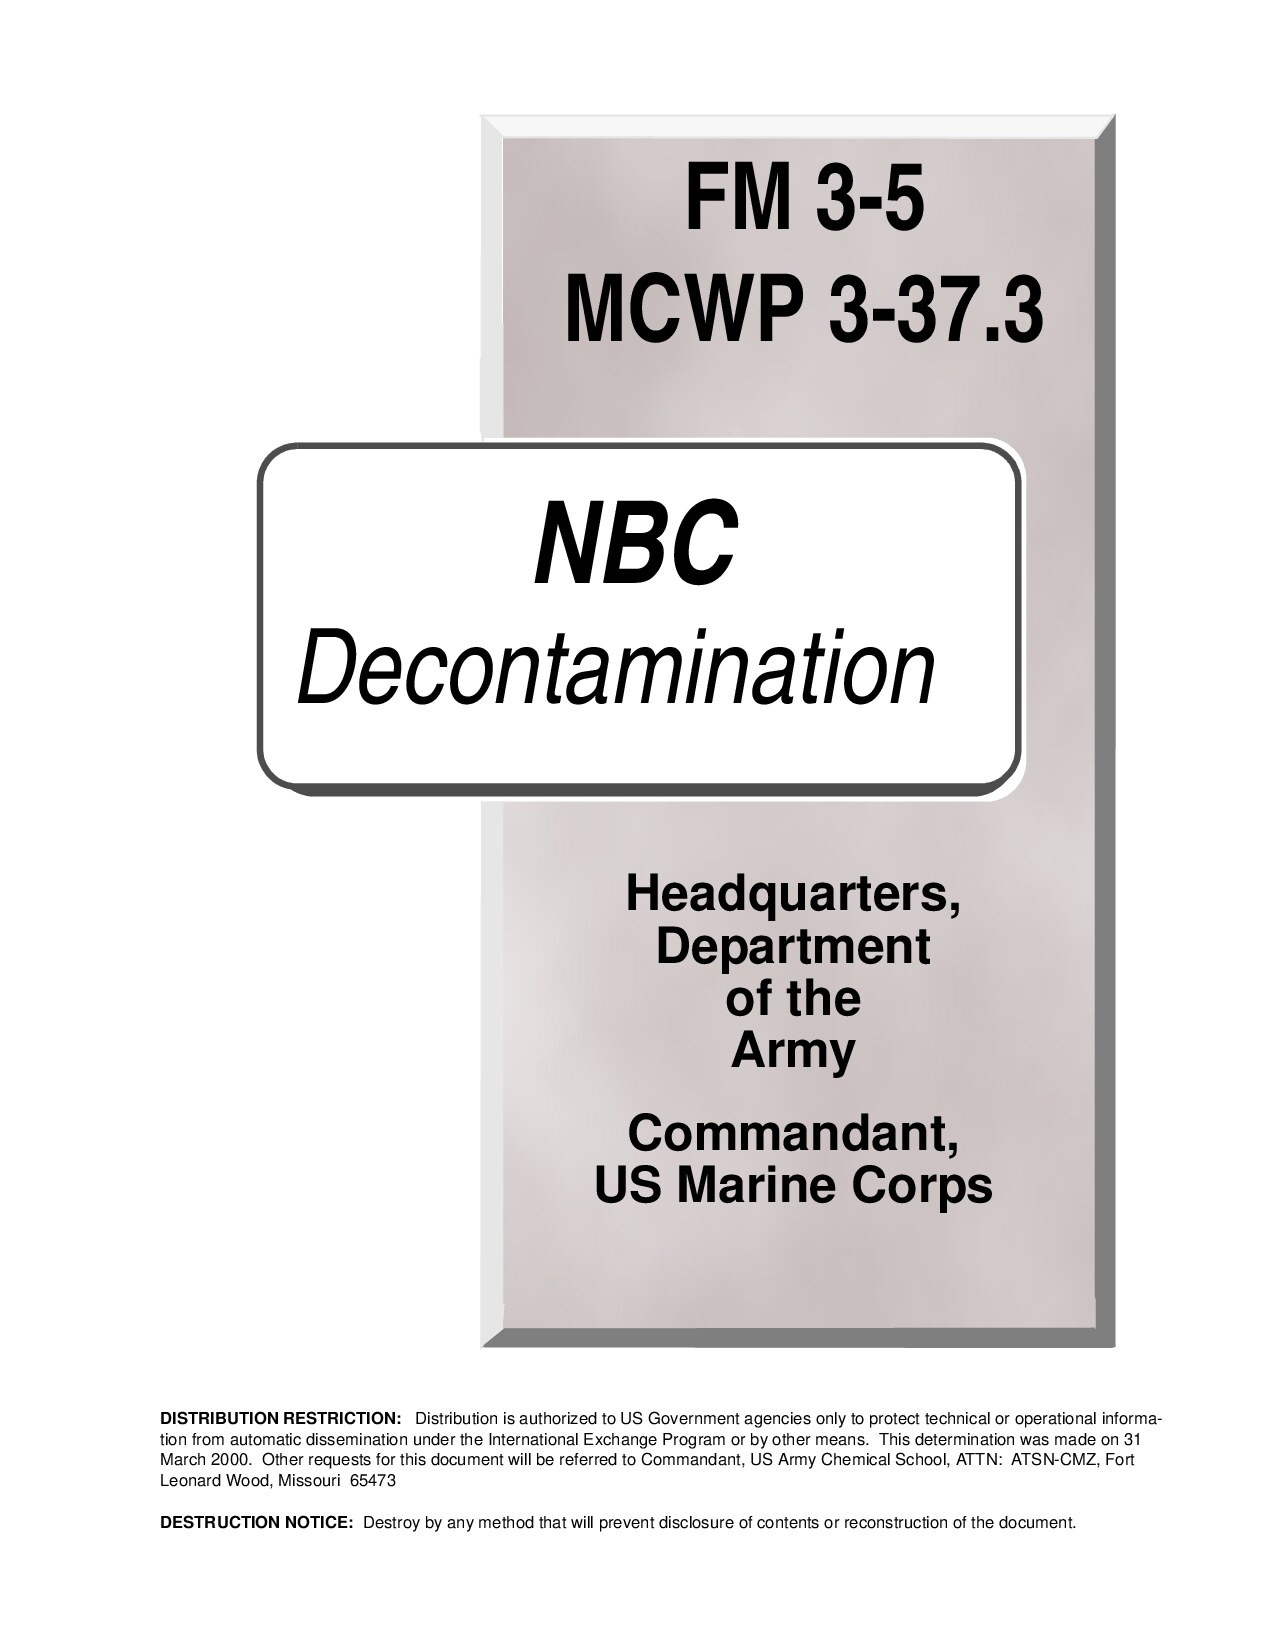 NBC Decontamination - FM 3-5